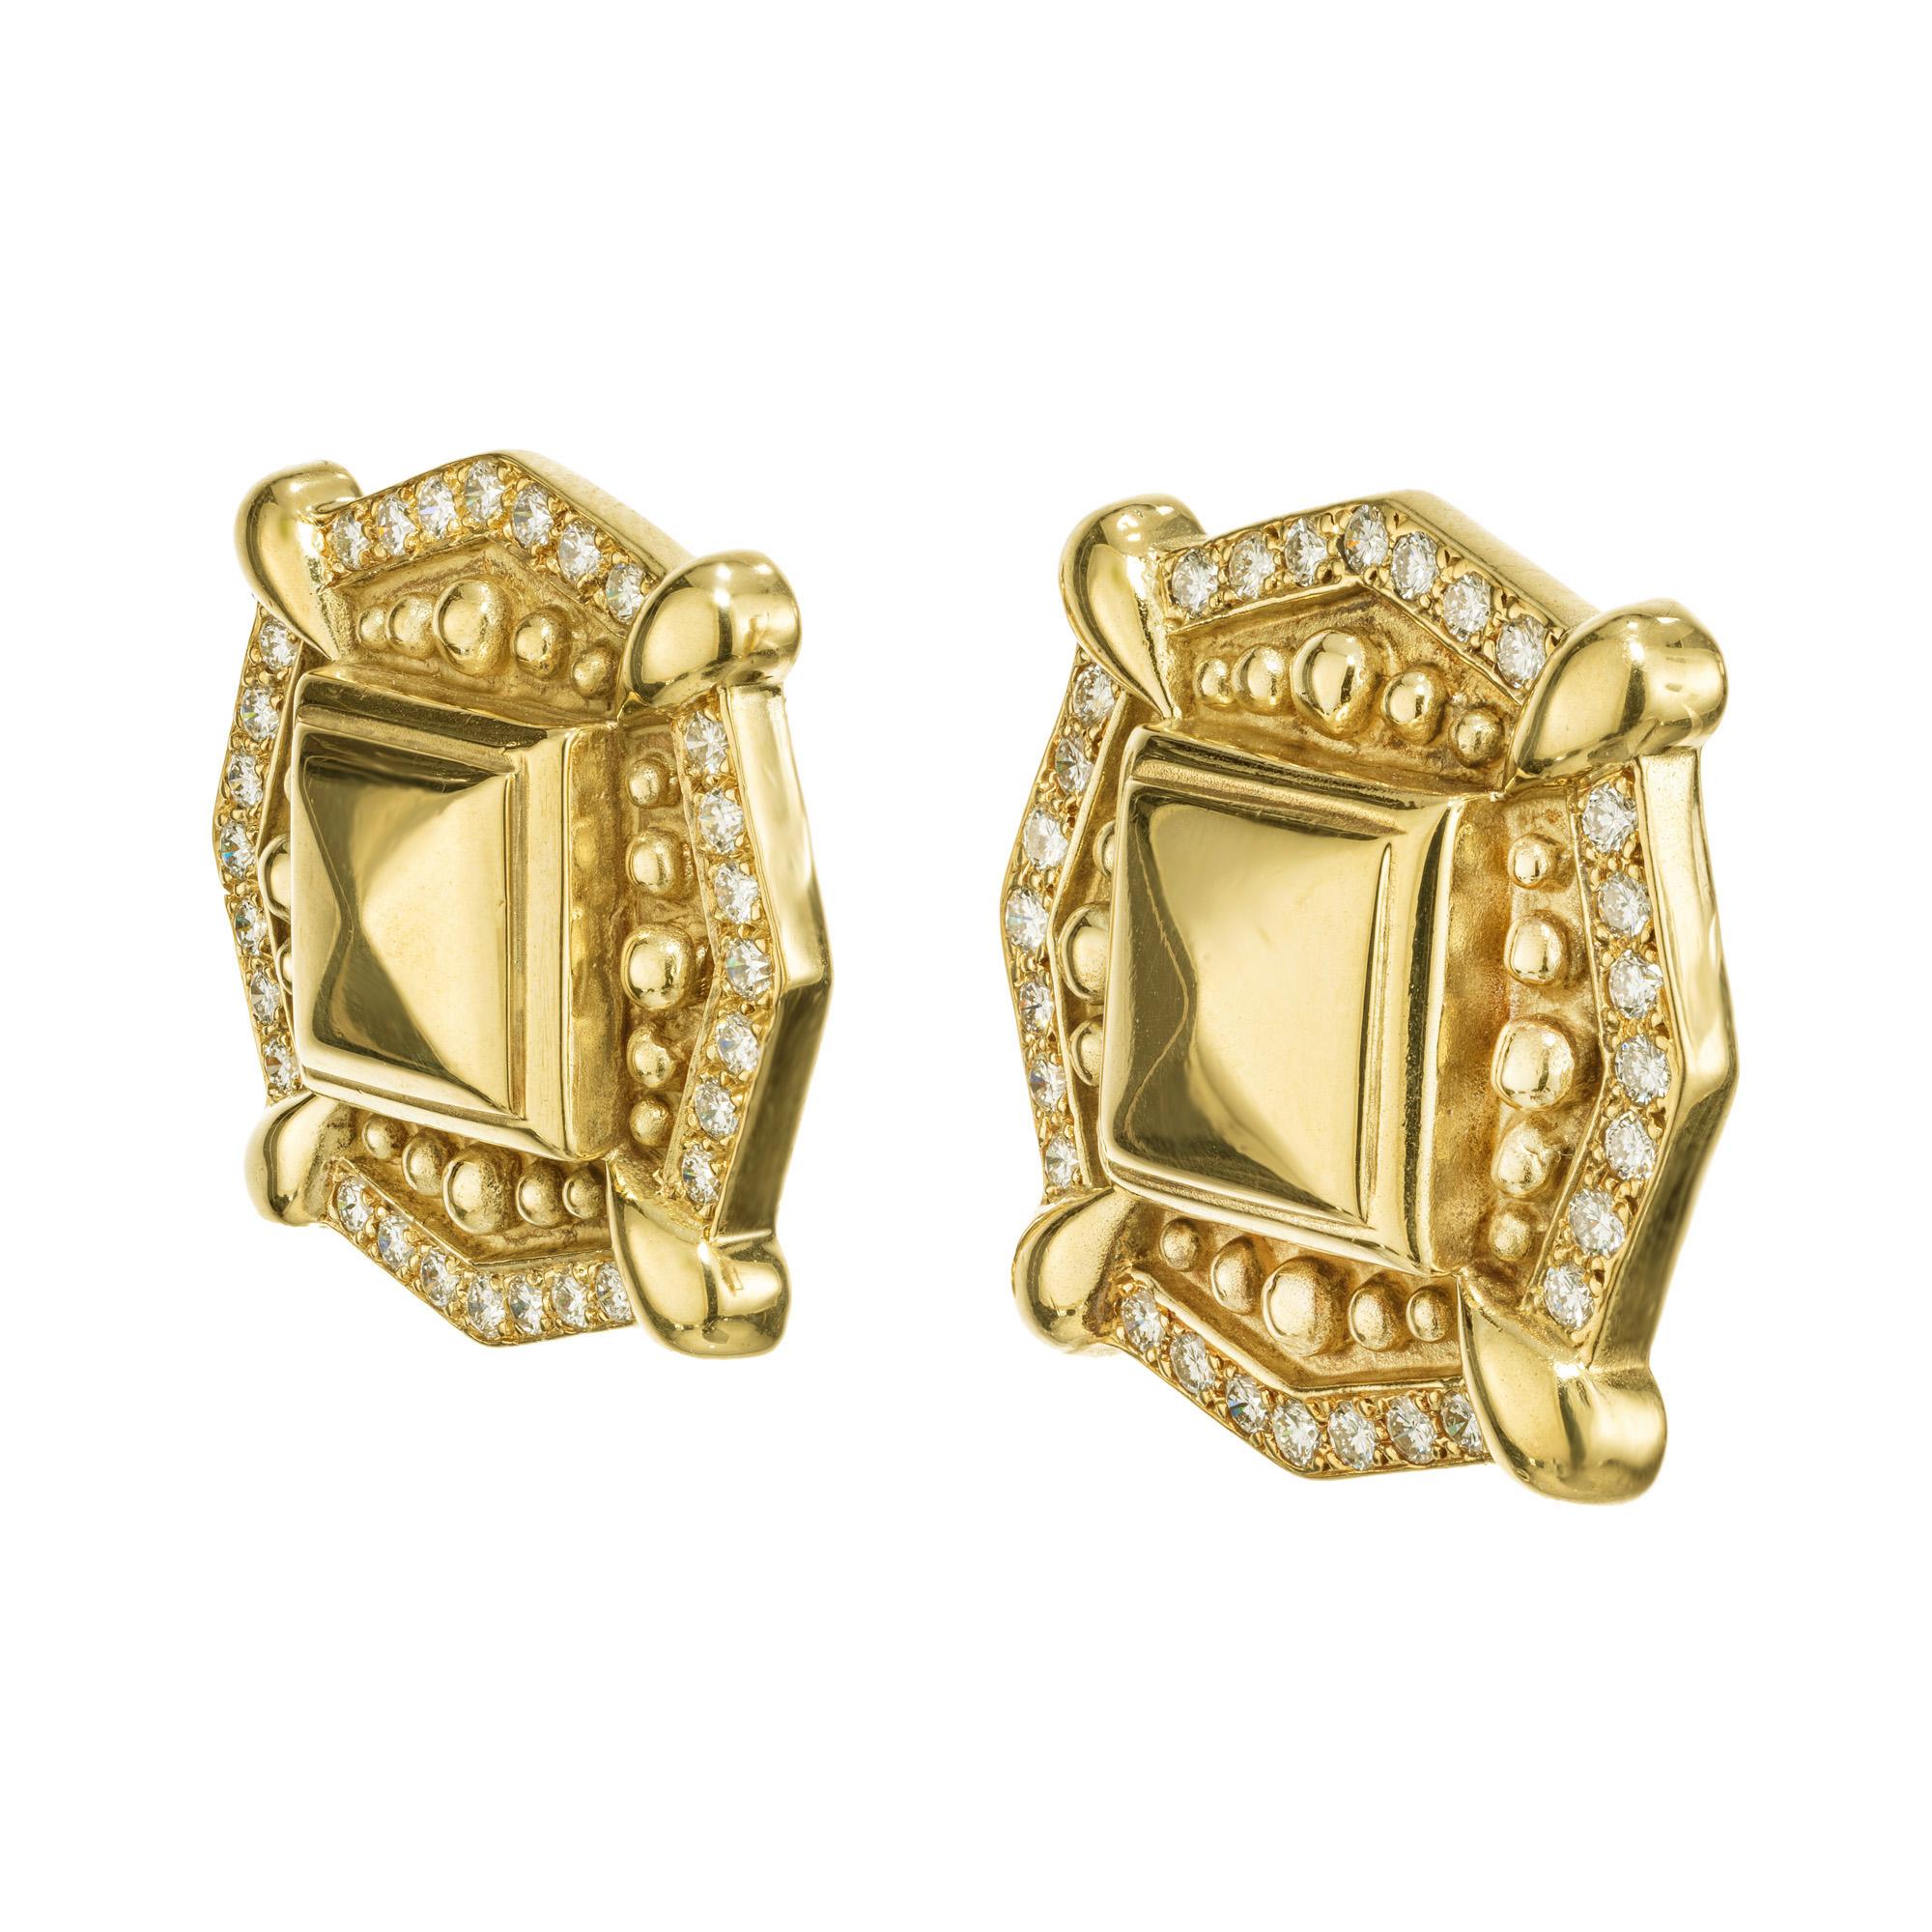 Mid-Century 1960's, etruskischen Stil, europäisch gefertigte texturierte Diamond Hebel zurück Ohrringe in 18k Gelbgold. Diese achteckigen Ohrringe mit Clipverschluss sind mit einem Halo aus rund geschliffenen Diamanten geschmückt, 56 Diamanten mit